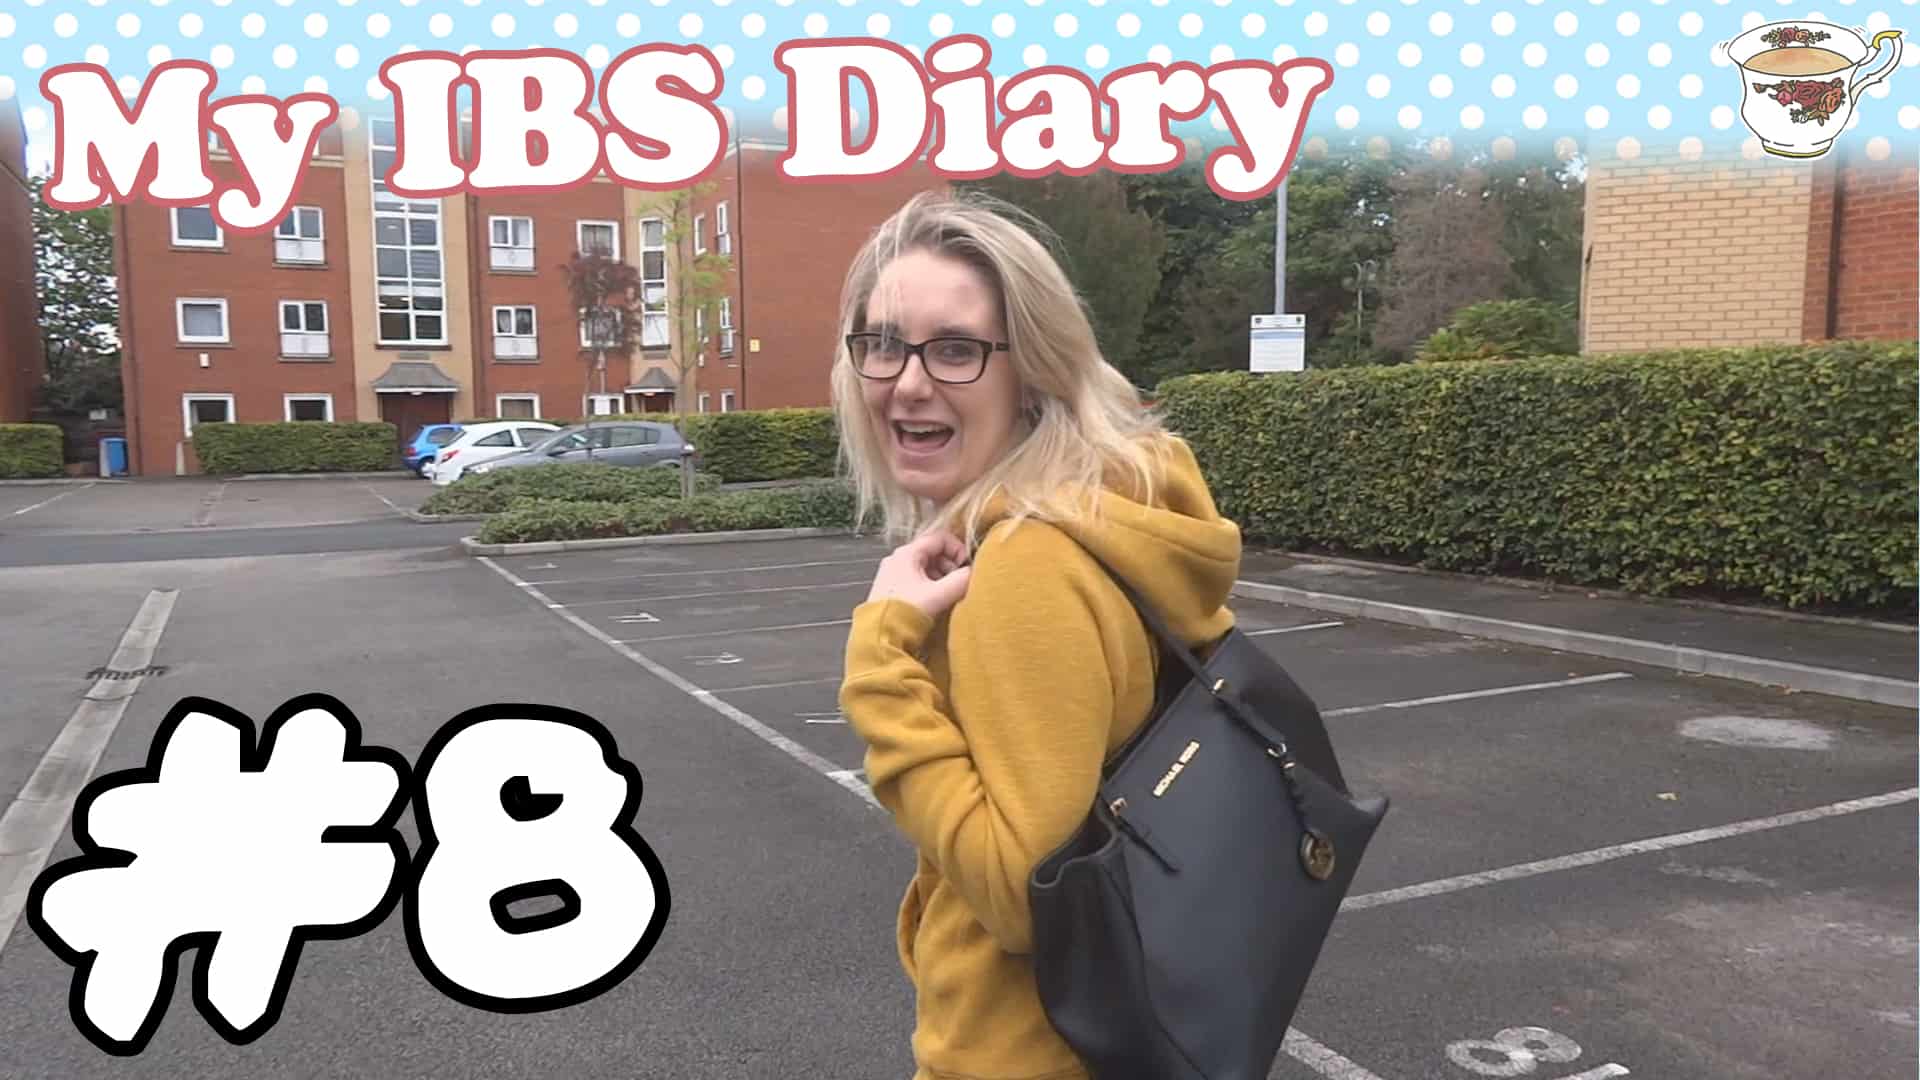 ibs diary week 8